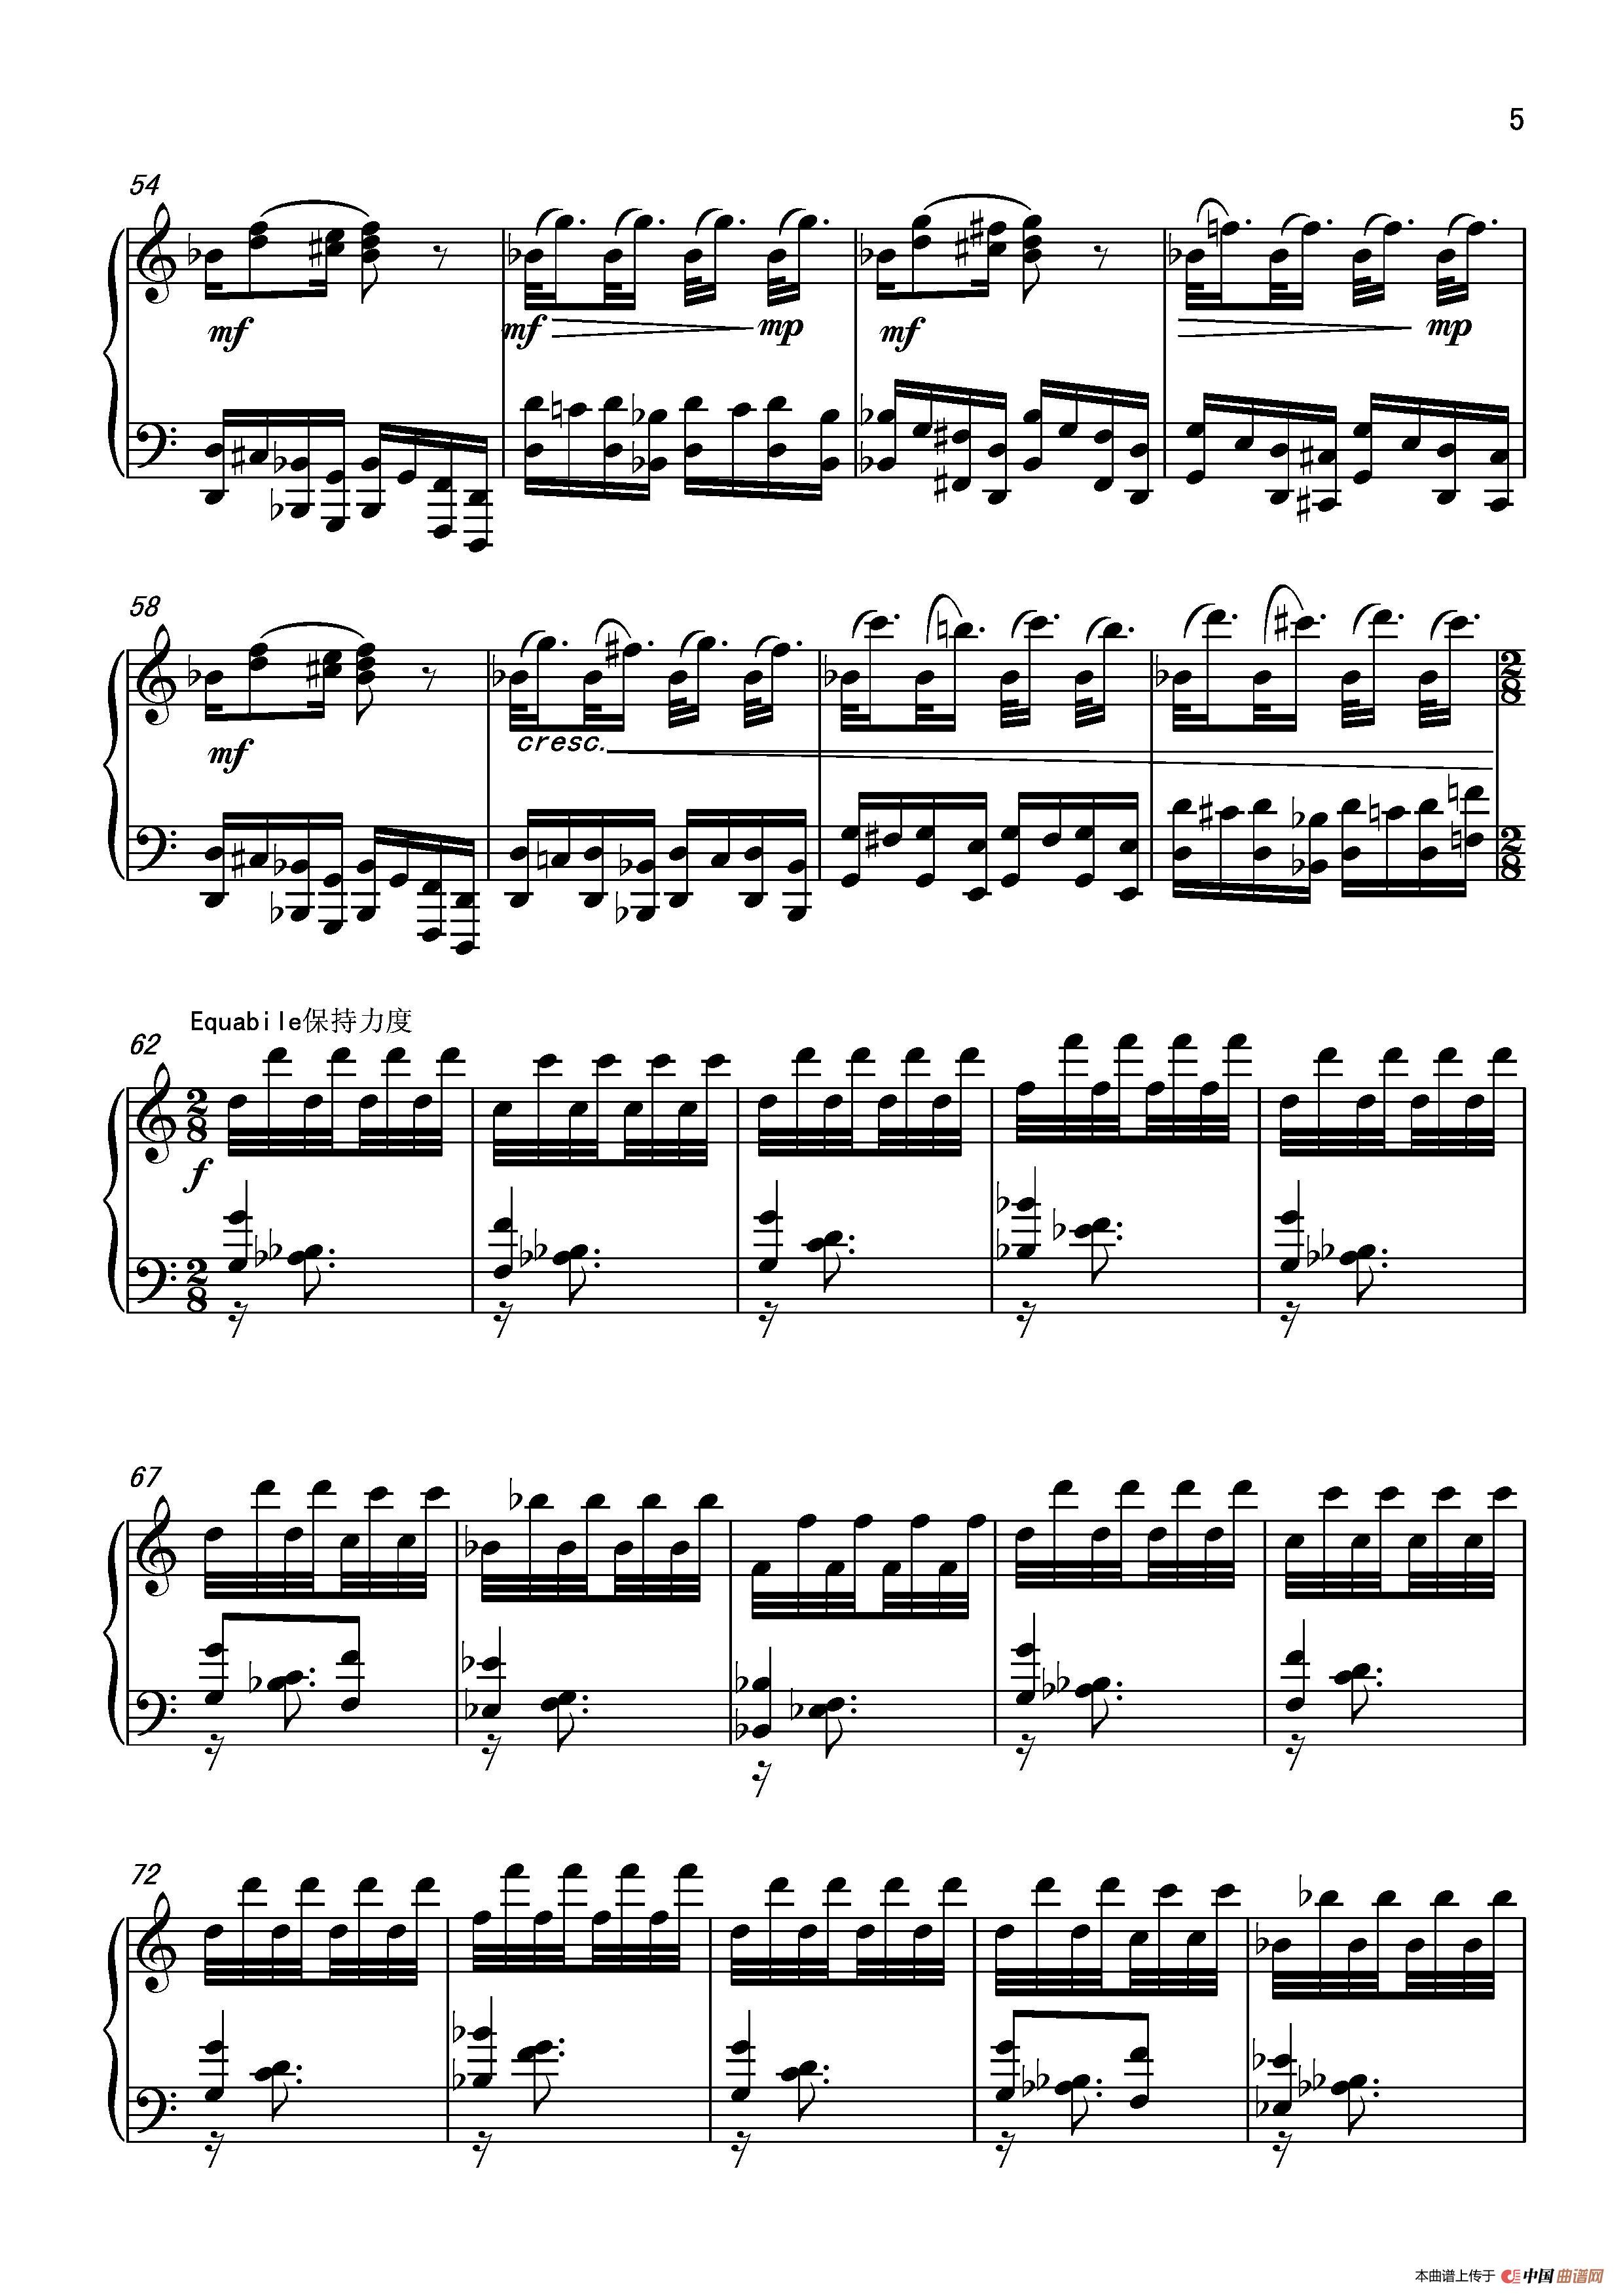 《第五钢琴奏鸣曲Piano Sonata No.5》钢琴曲谱图分享